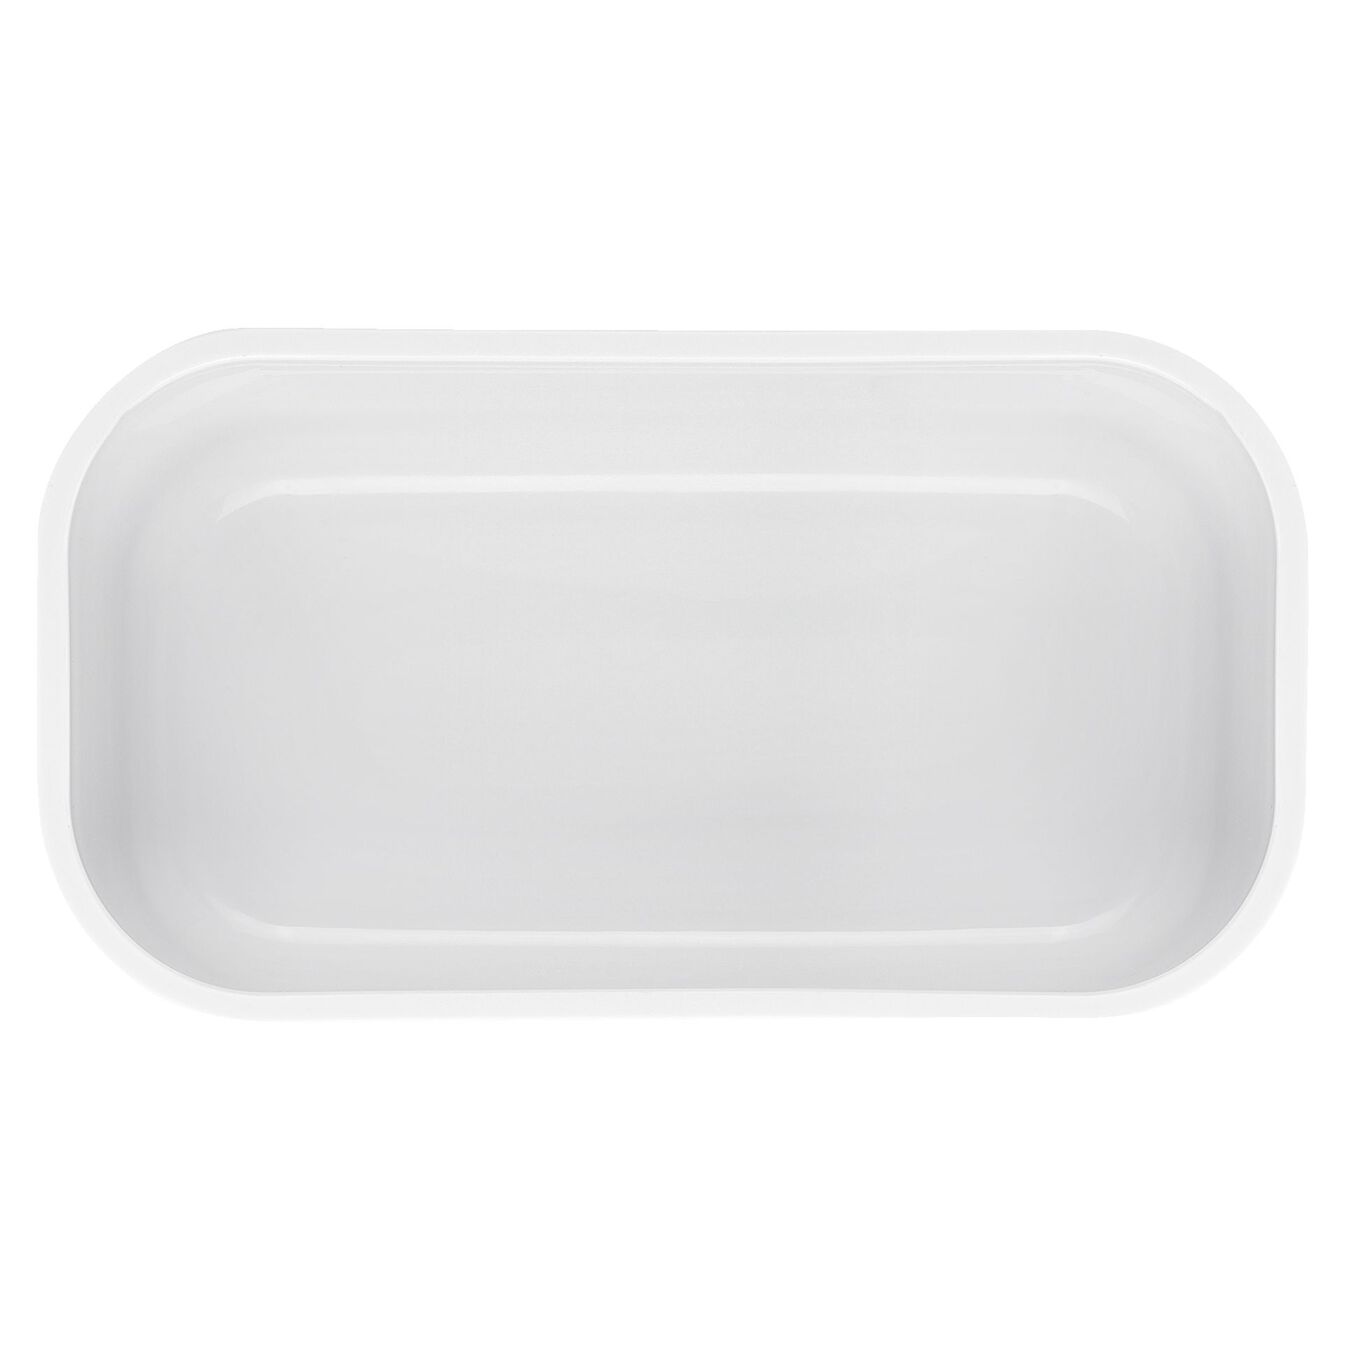 Lunch box sottovuoto S, plastica, bianco-grigio,,large 4